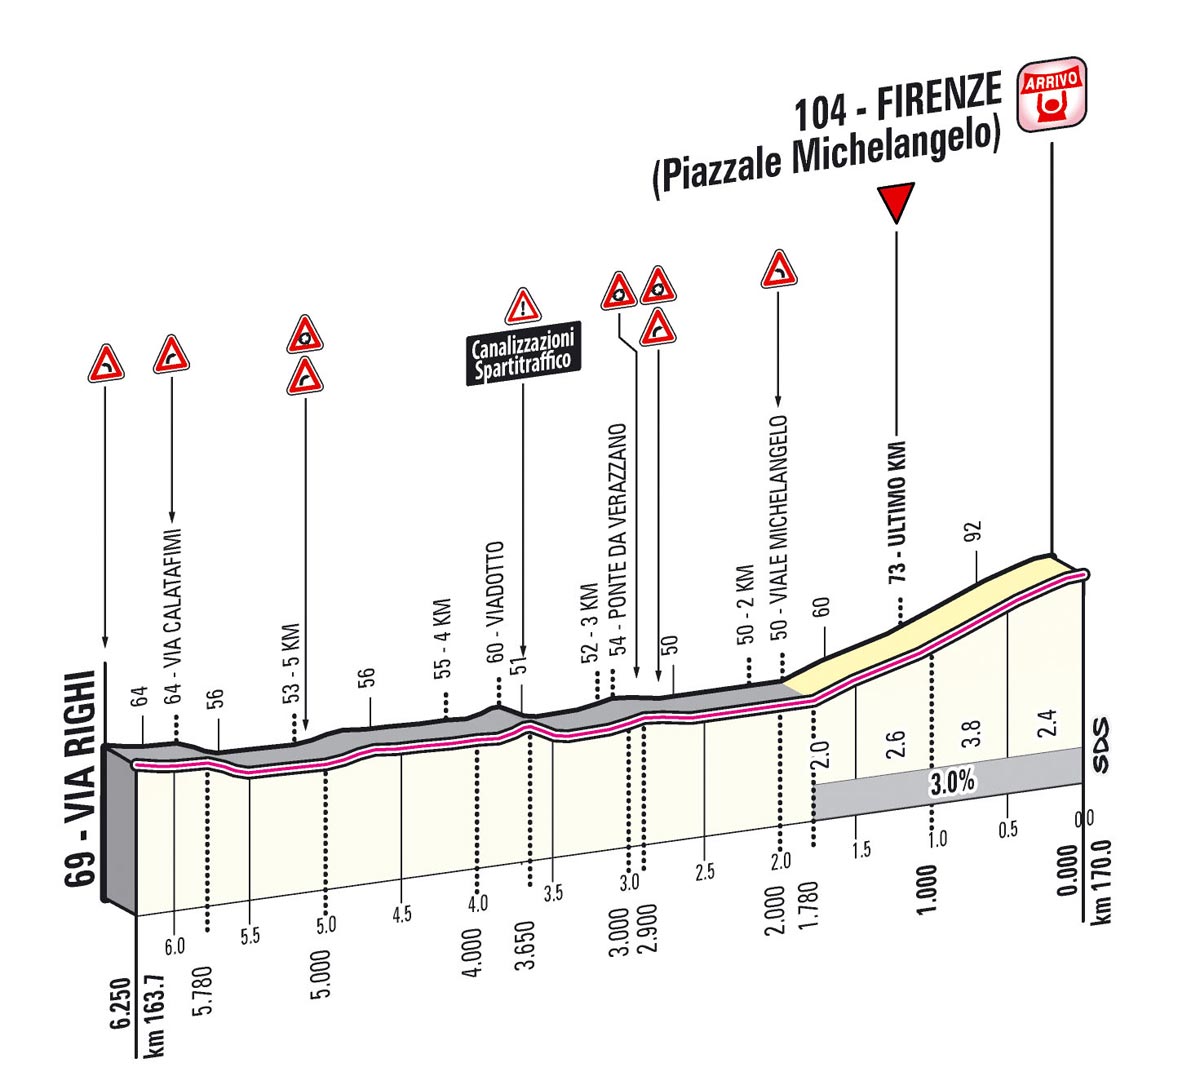 Giro d'Italia 2013 Stage 9 last kms